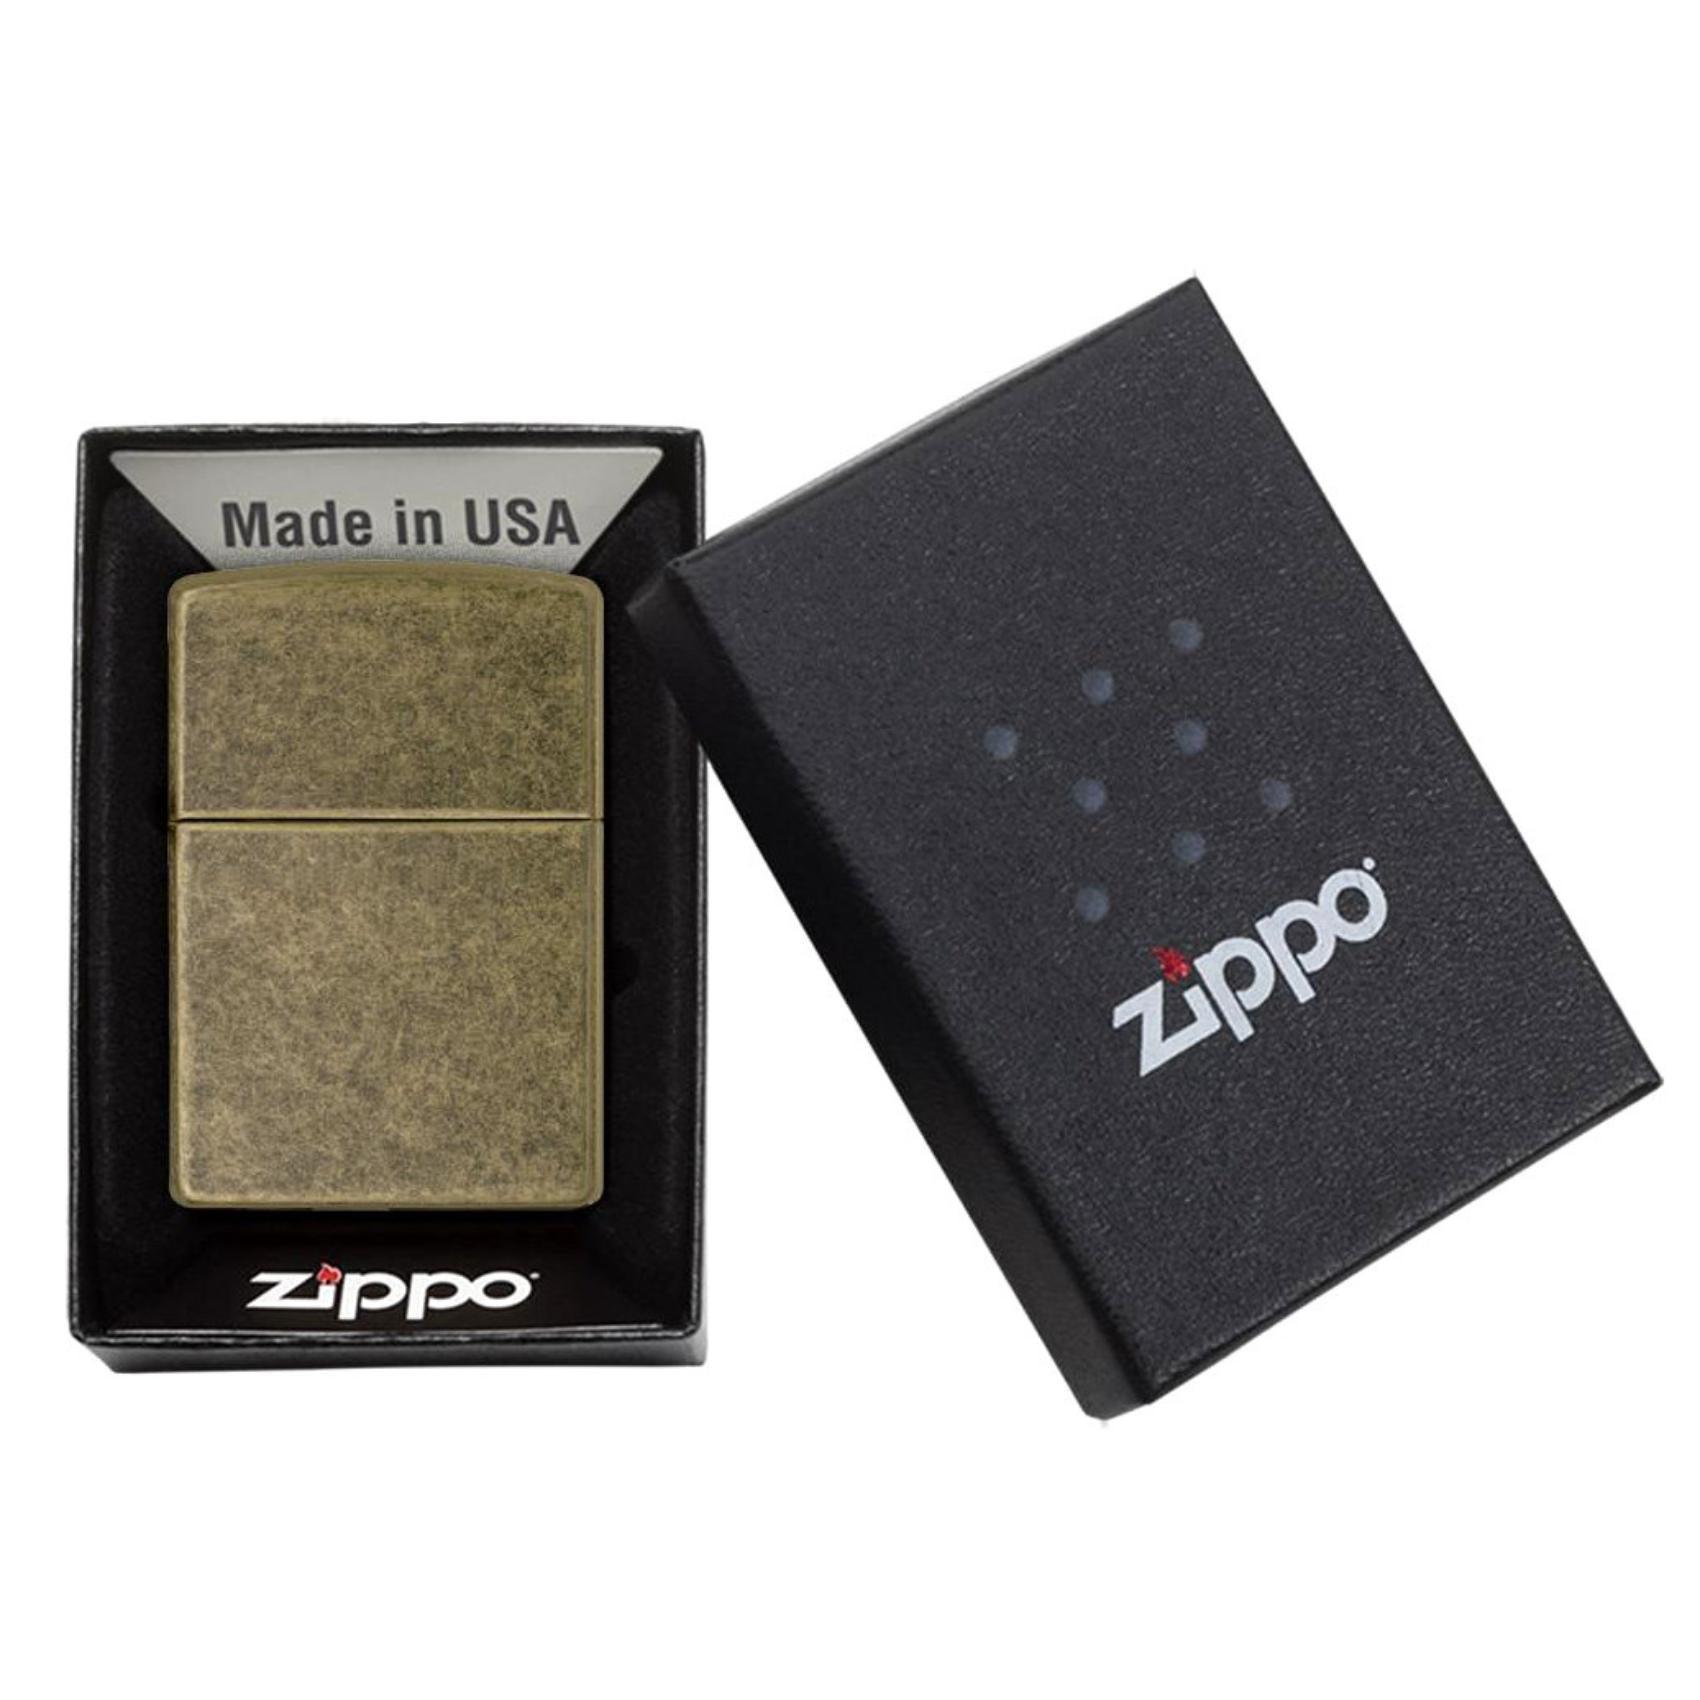 Αντιανεμικός αναπτήρας Zippo Antique Brass 201FB σε σκούρο χρυσό χρώμα.